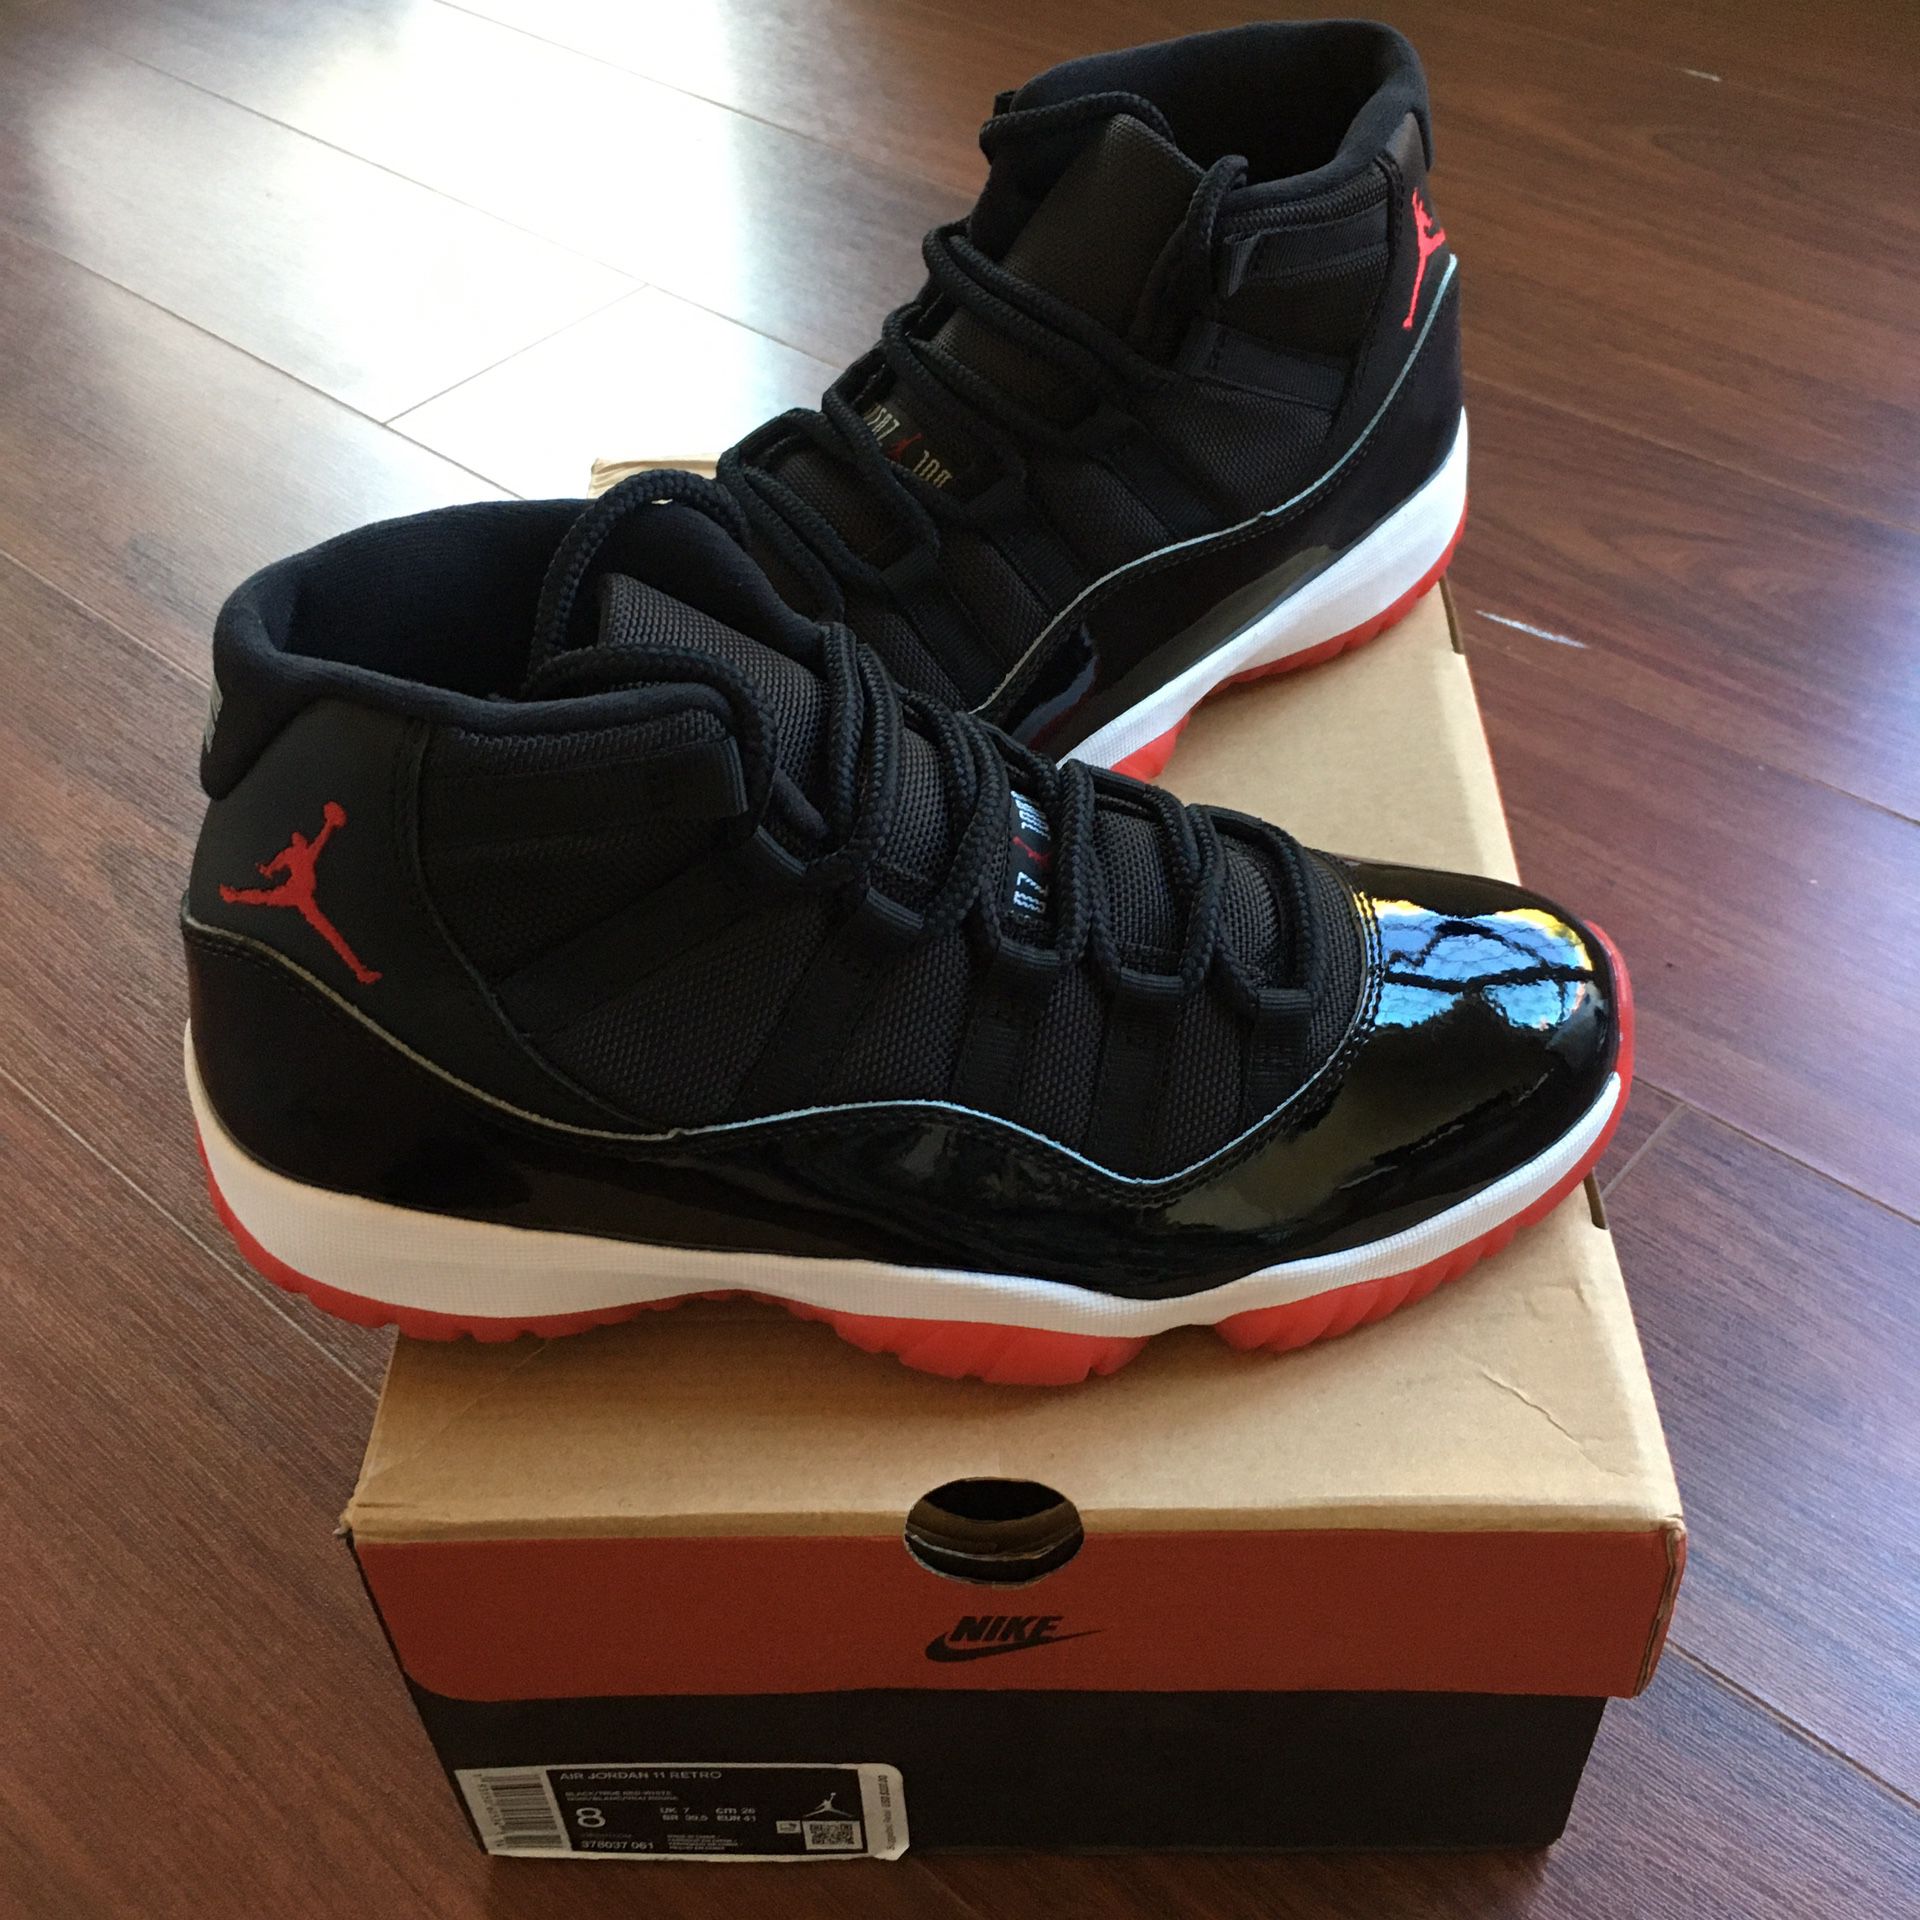 Air Jordan 11 Retro - 11s Jordans Sneakers - Size 8